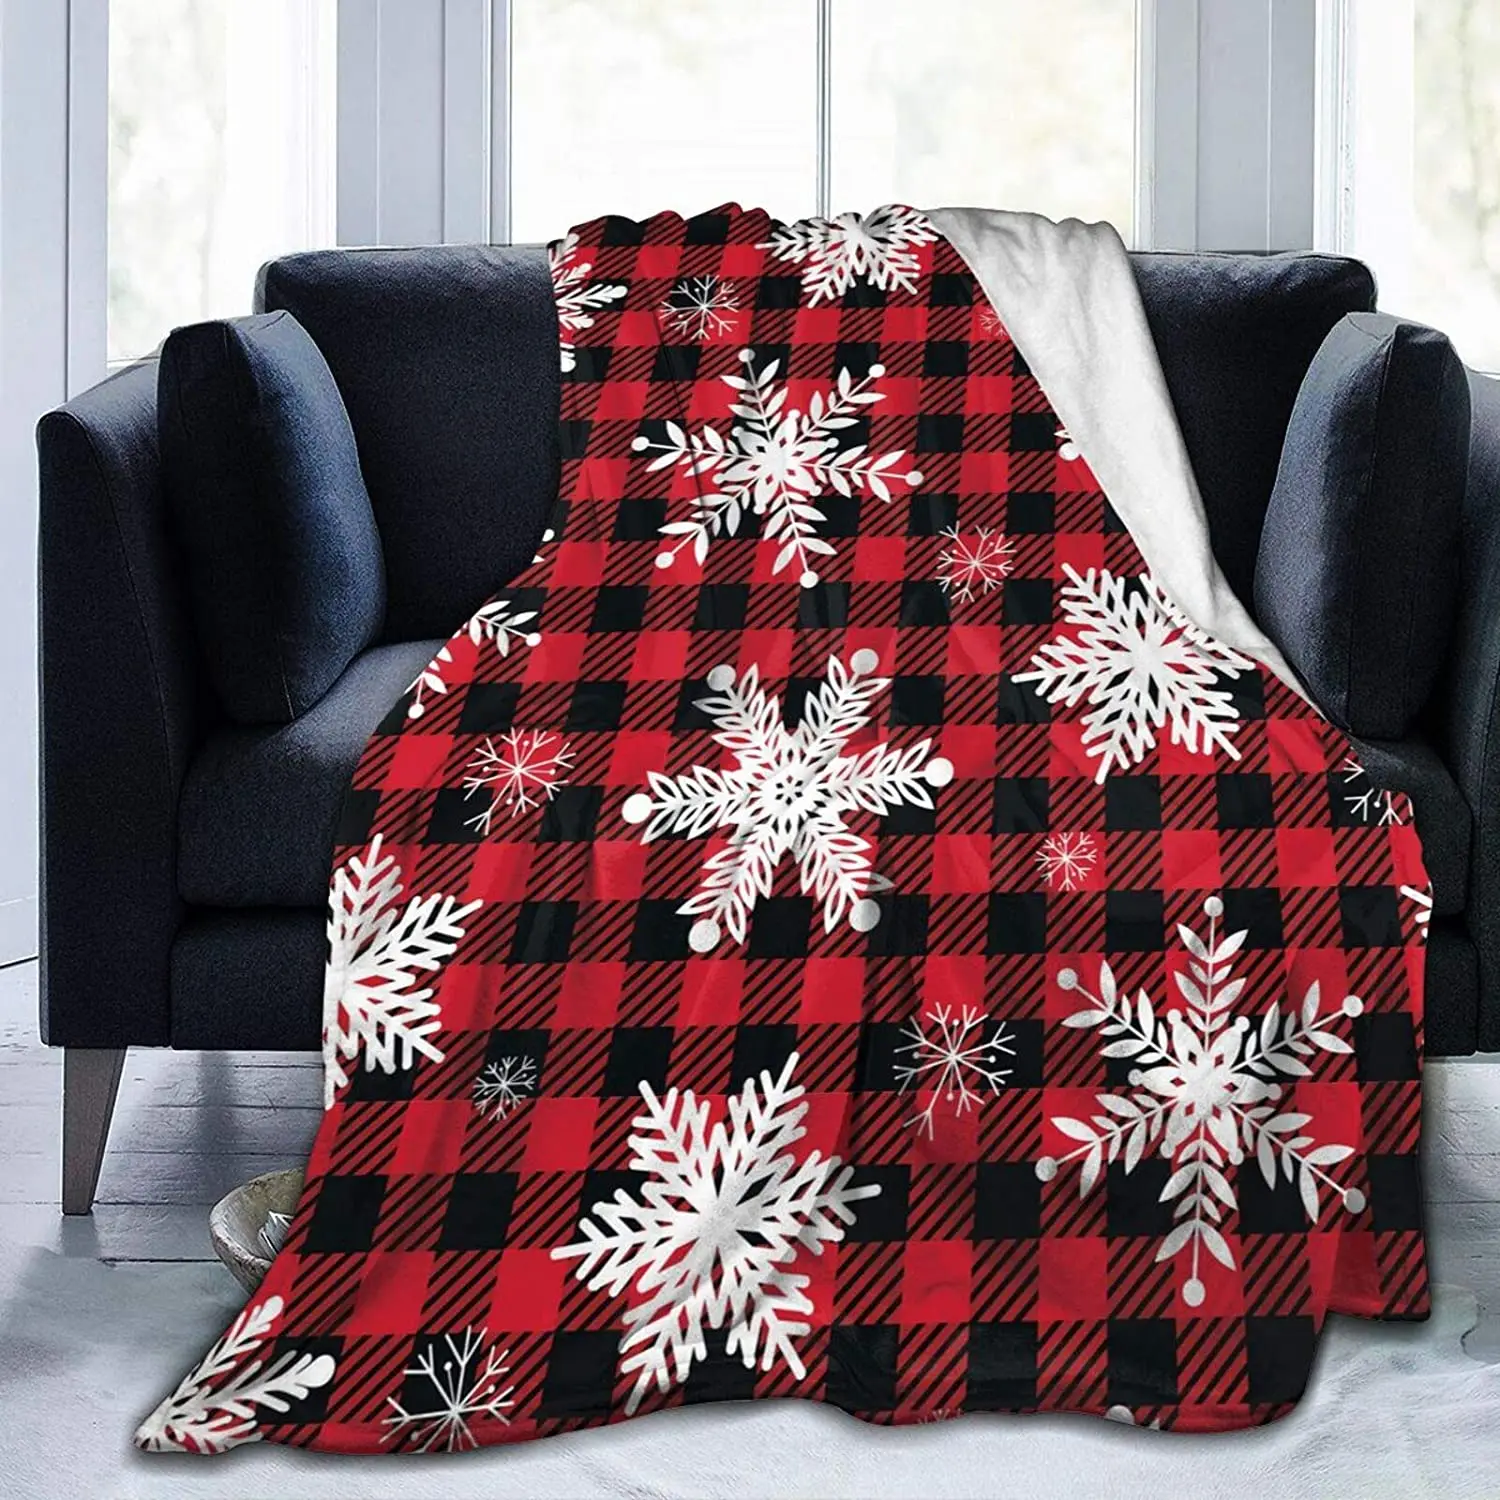 

Фланелевое пушистое полностью Флисовое одеяло Рождественская Снежинка, красное, черно-белое, с рисунком буйвола, Королевский размер, плюше...